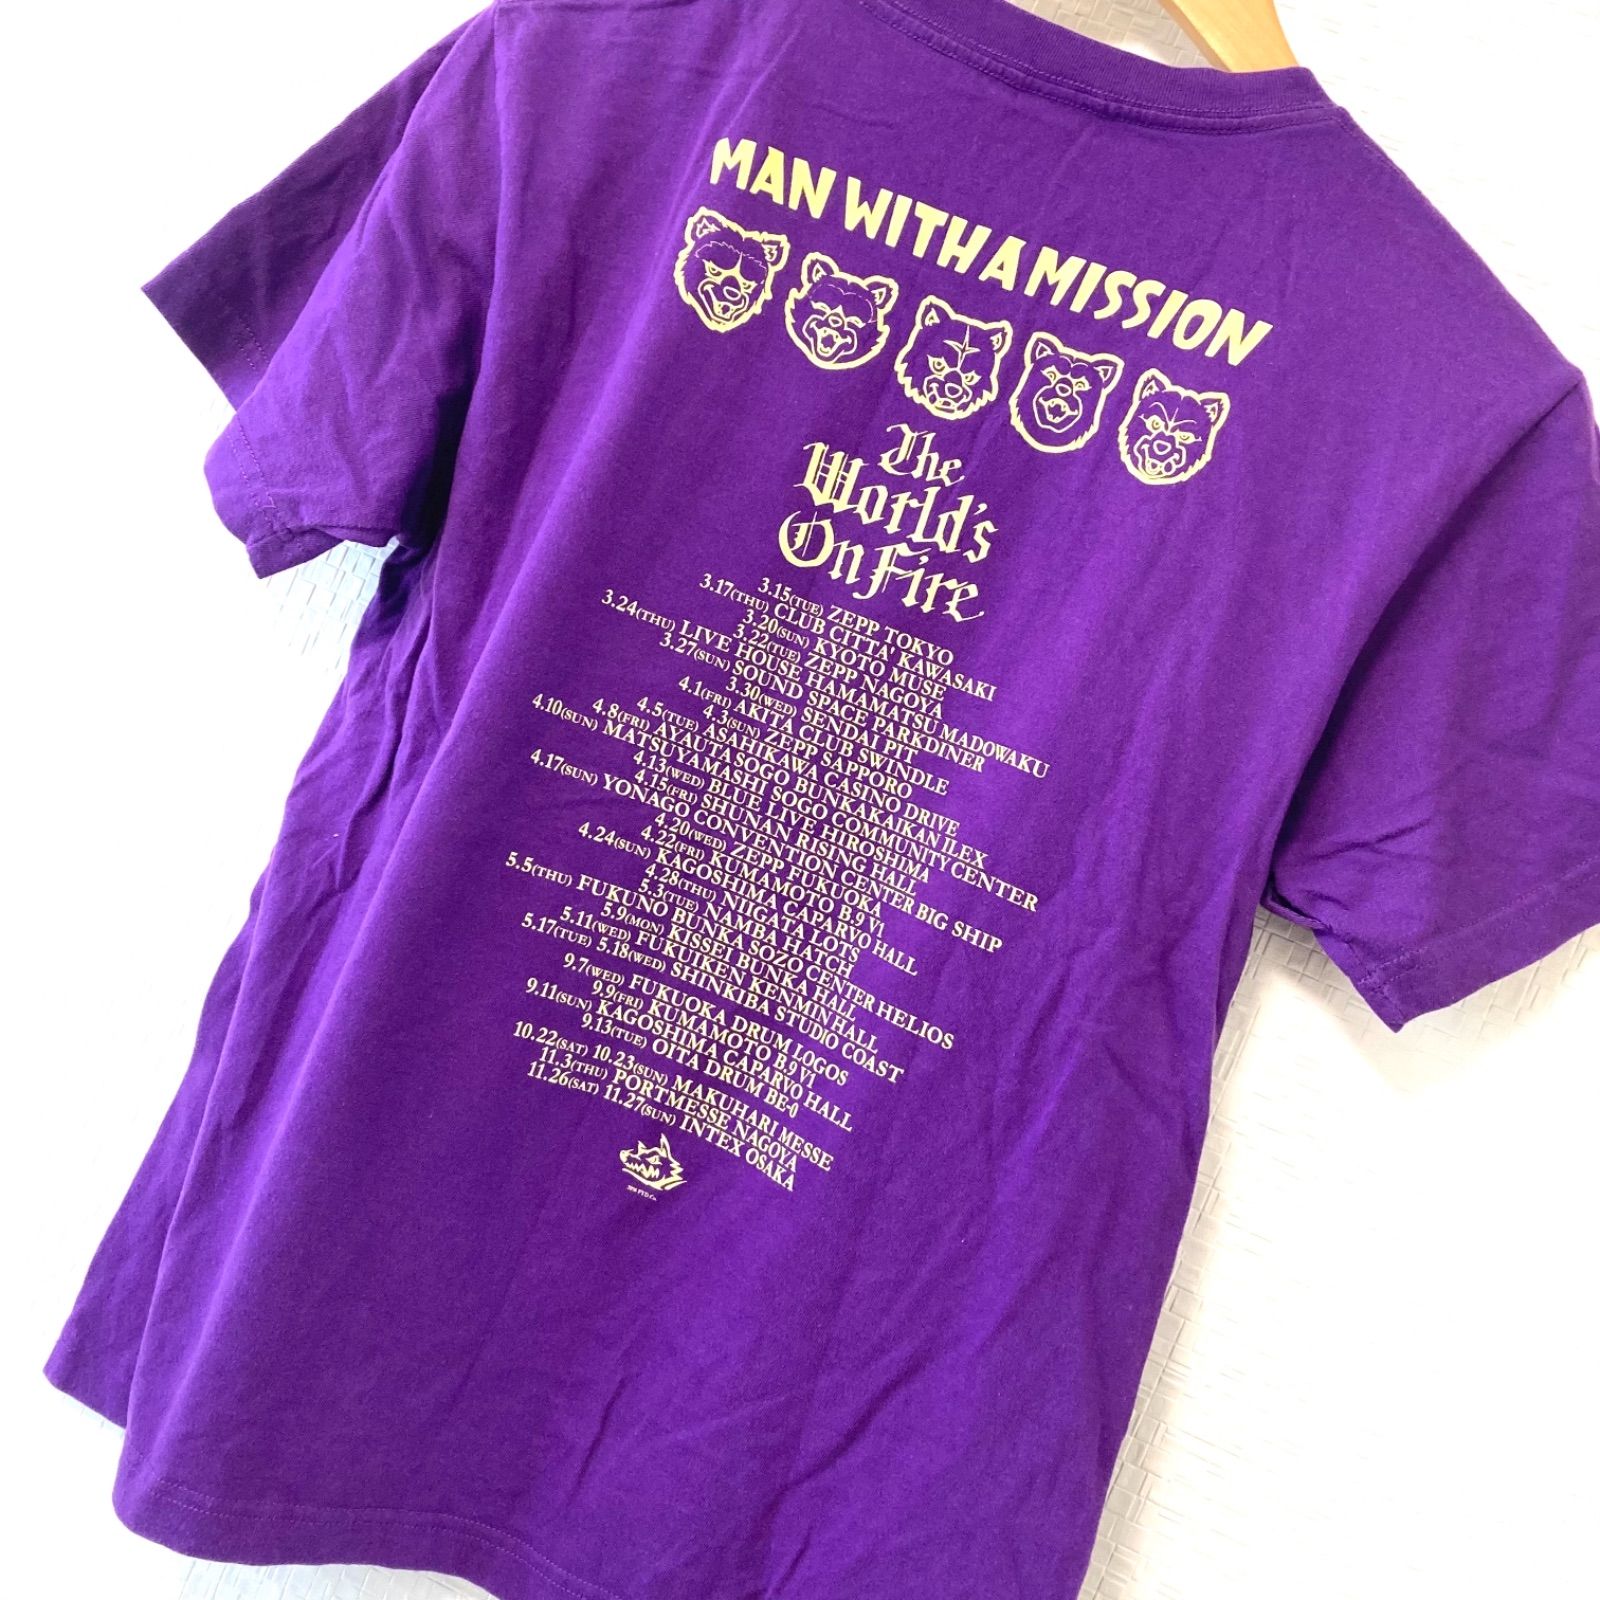 w^)b MAN WITH A MISSION マンウィズ バンドTシャツ クルーネック 半袖 綿 コットン100% オオカミ ガウラー プリント  カジュアル ライブ 応援 グッズ 紫 パープル メンズ サイズS トップス 上着 - メルカリ